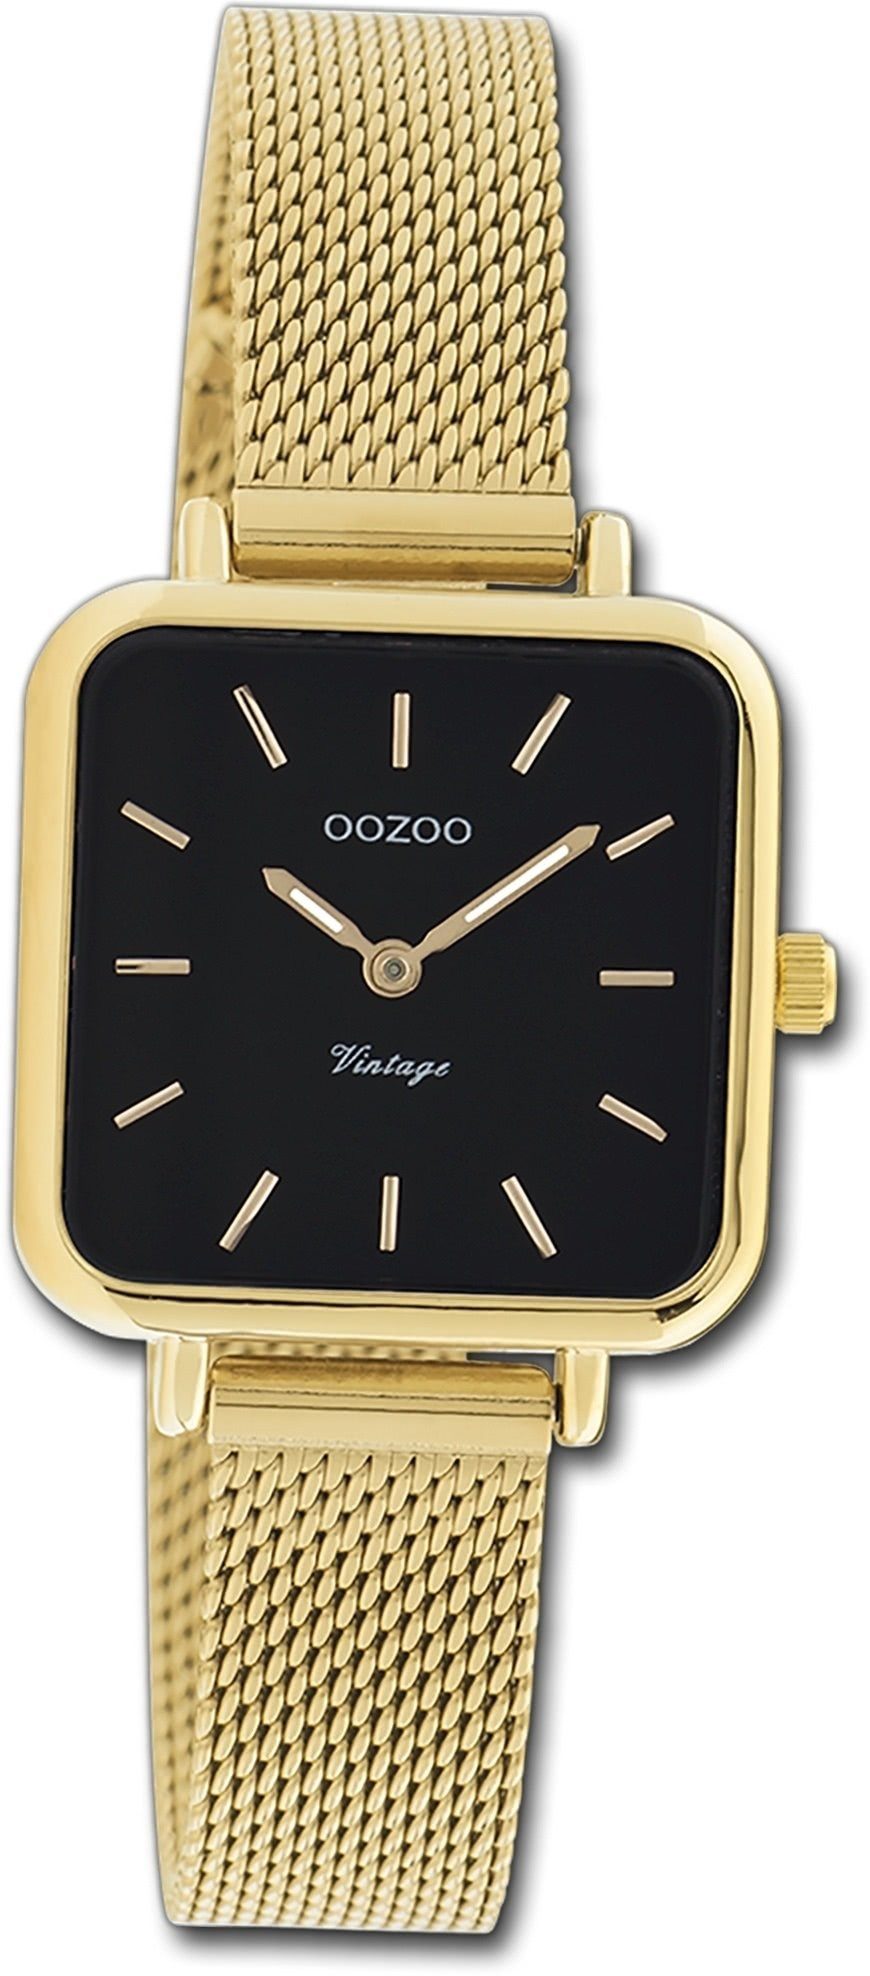 klein (ca. Damen Vintage Quarzuhr Oozoo Series, Armbanduhr Mesharmband Gehäuse, gold, Damenuhr OOZOO 26x26mm) rechteckiges